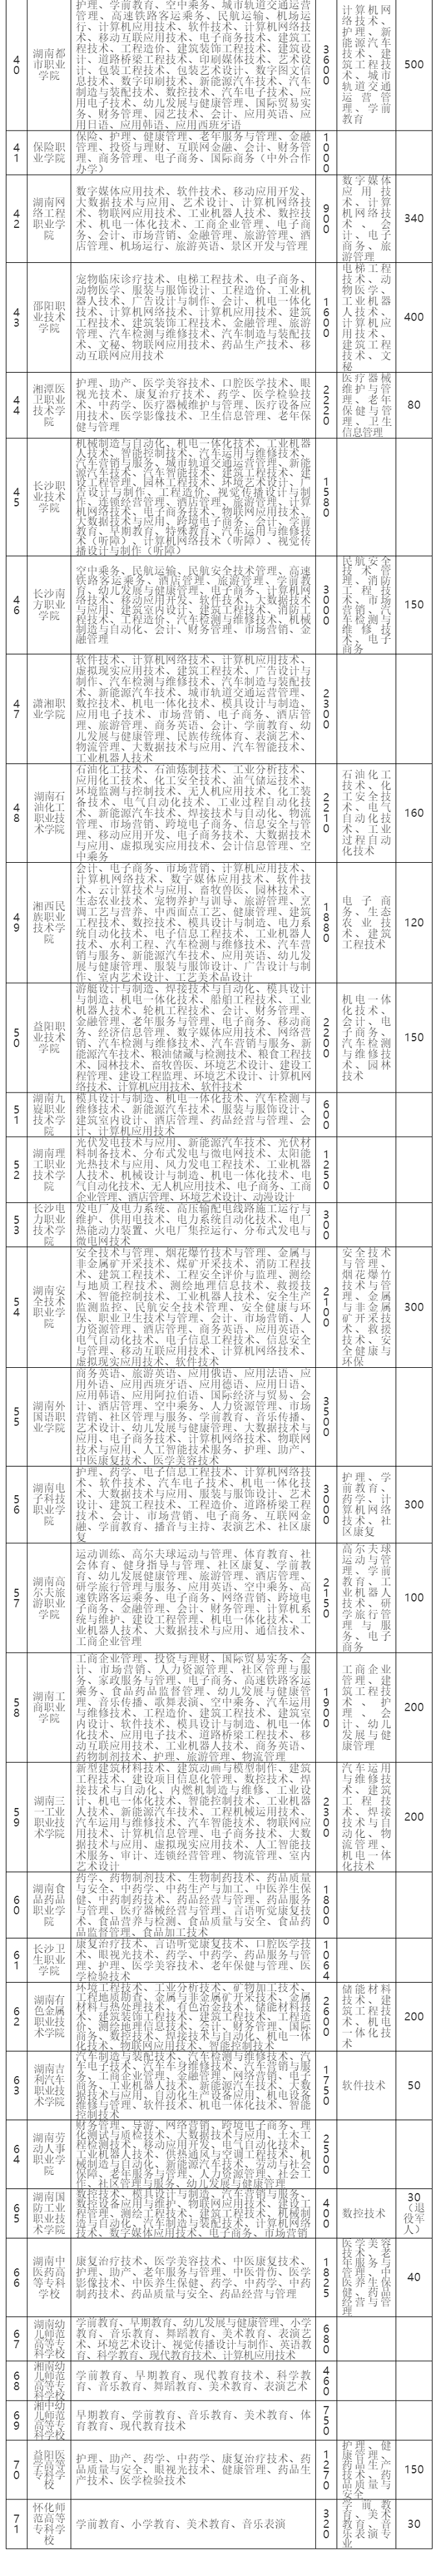 湖南省2020年高职院校(高专学校)单独招生专业及规模